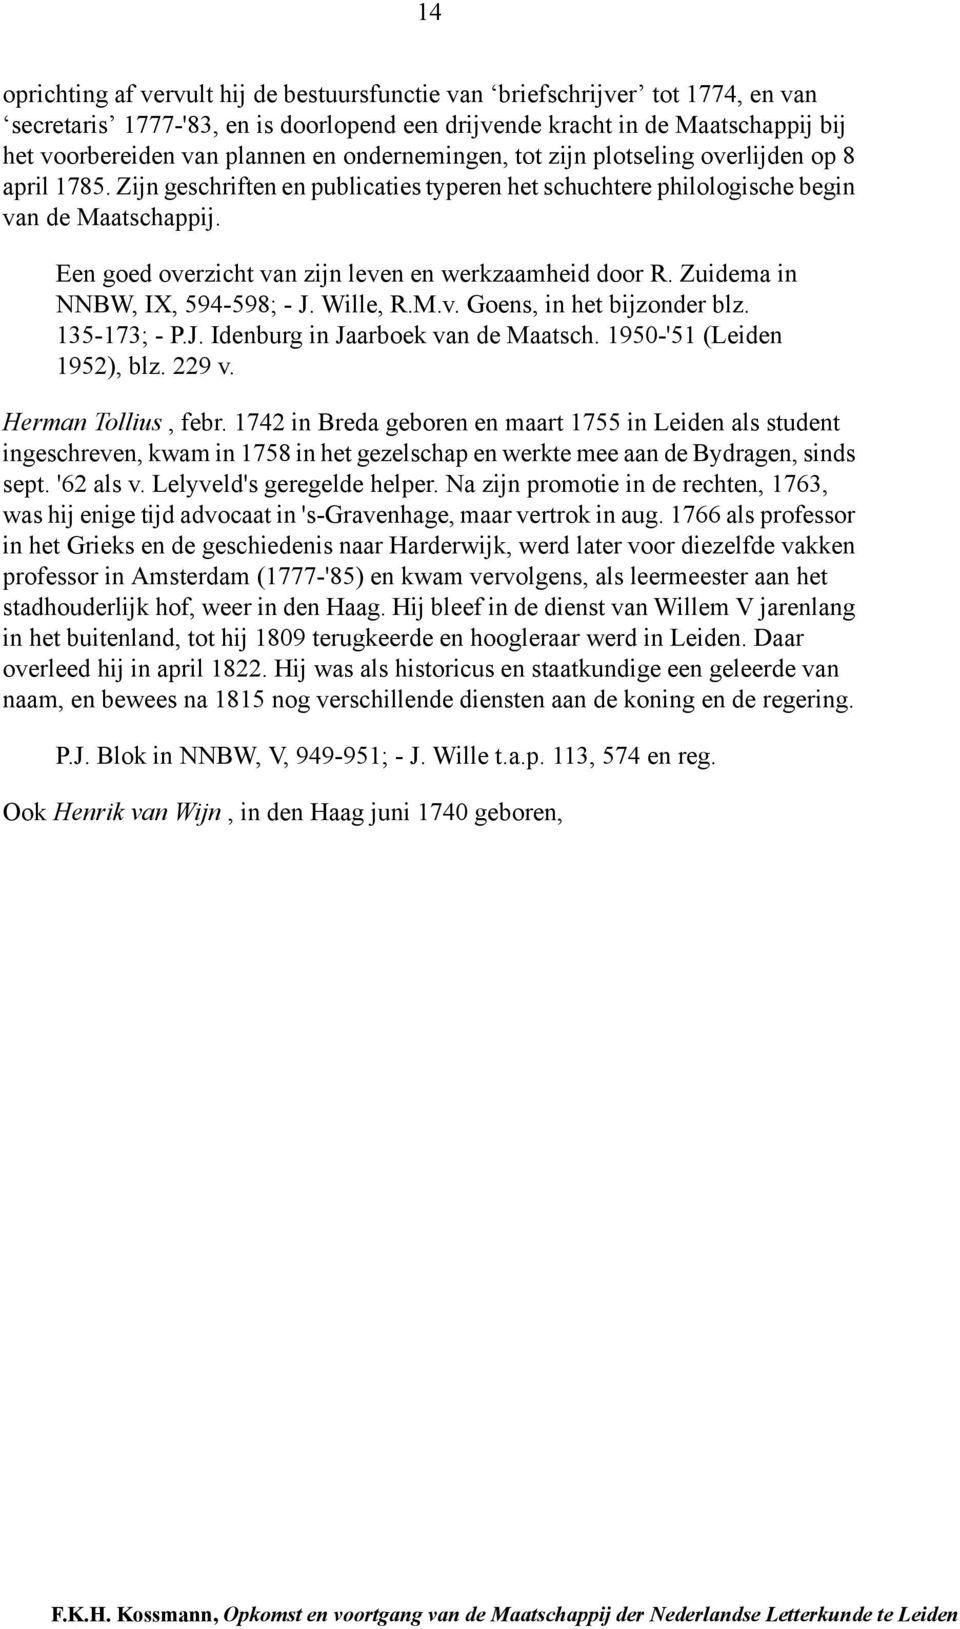 Een goed overzicht van zijn leven en werkzaamheid door R. Zuidema in NNBW, IX, 594-598; - J. Wille, R.M.v. Goens, in het bijzonder blz. 135-173; - P.J. Idenburg in Jaarboek van de Maatsch.